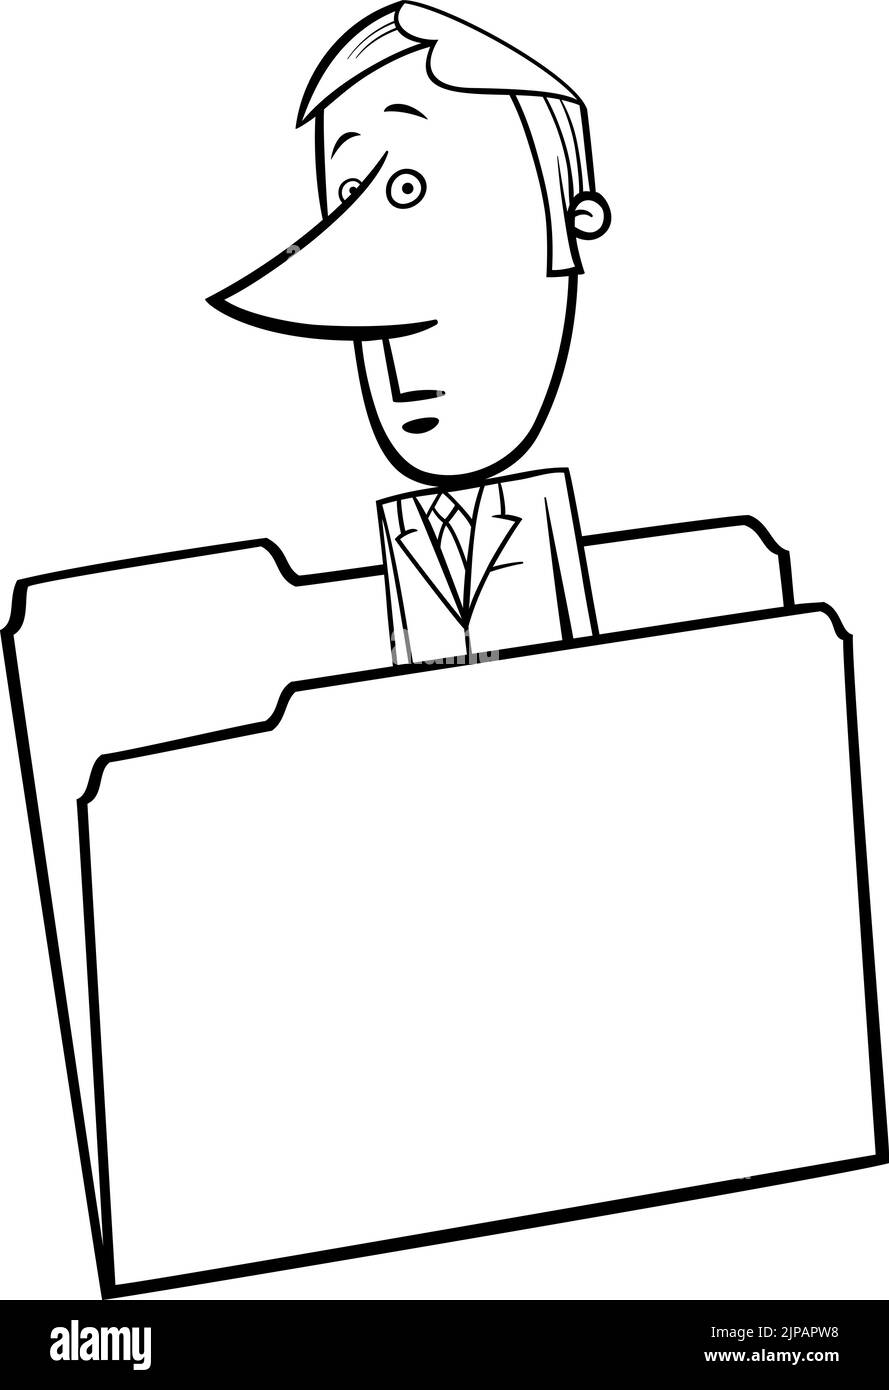 Dessin animé de concept noir et blanc illustration du personnage de bande dessinée d'homme d'affaires papier dans un dossier Illustration de Vecteur